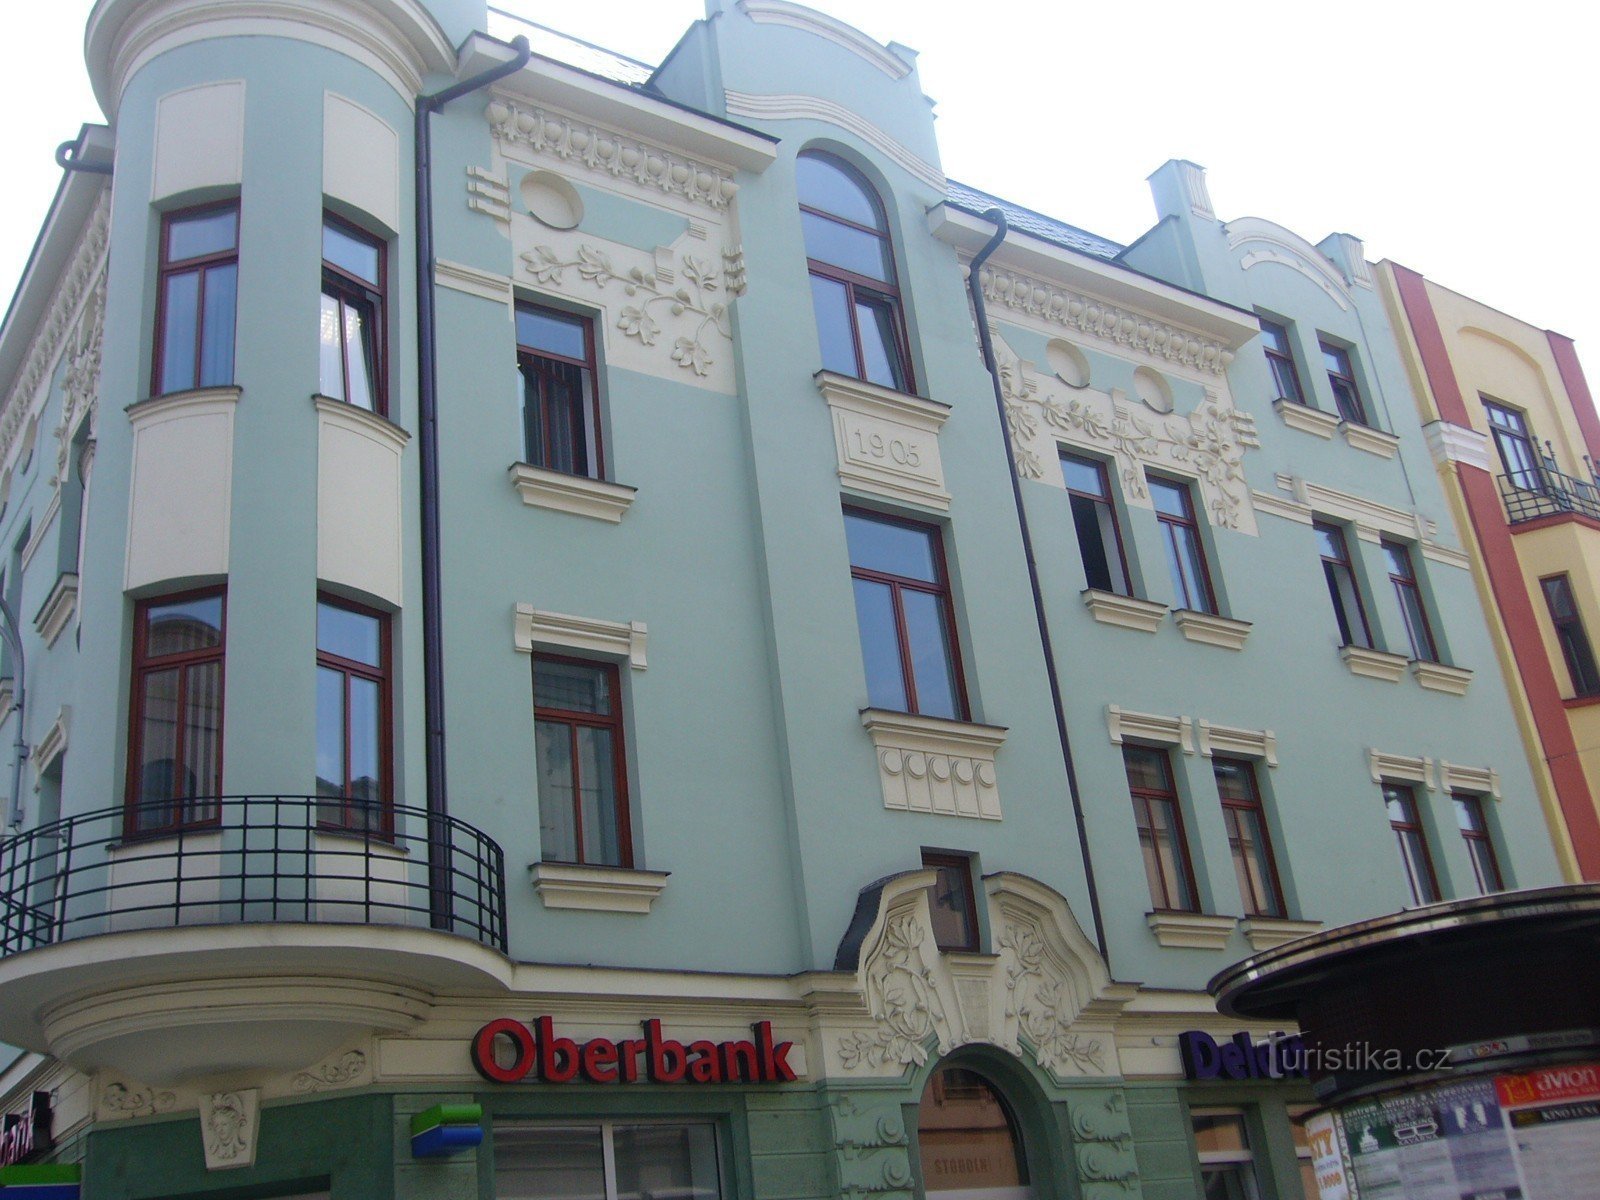 Maison Art Nouveau au coin des rues Nádražní et Stodolní